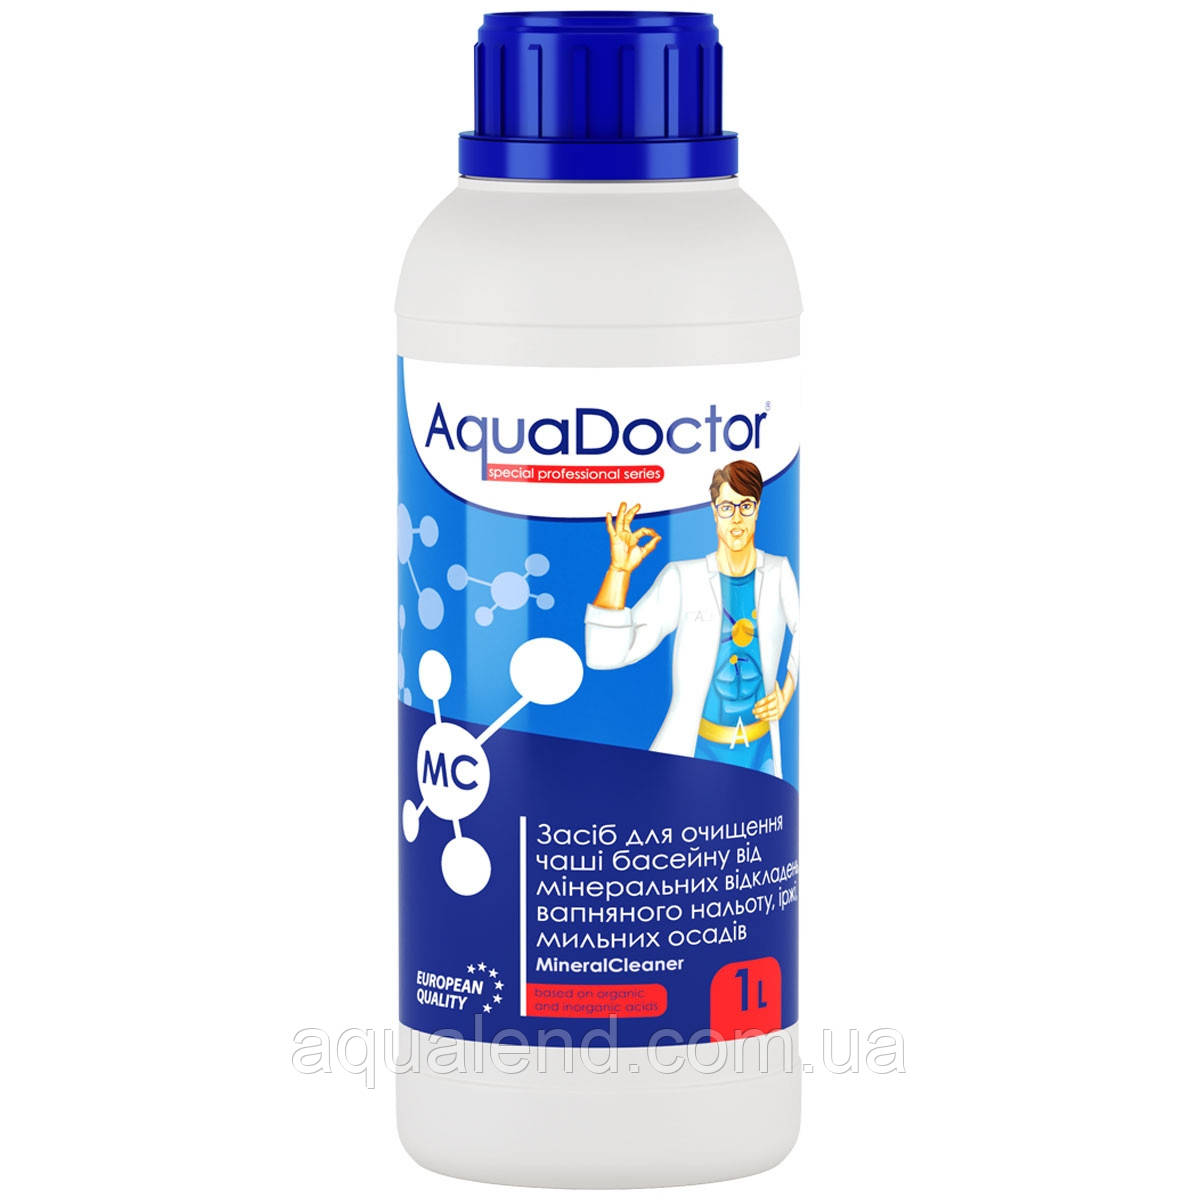 AquaDoctor AquaDoctor MC MineralCleaner 1 л